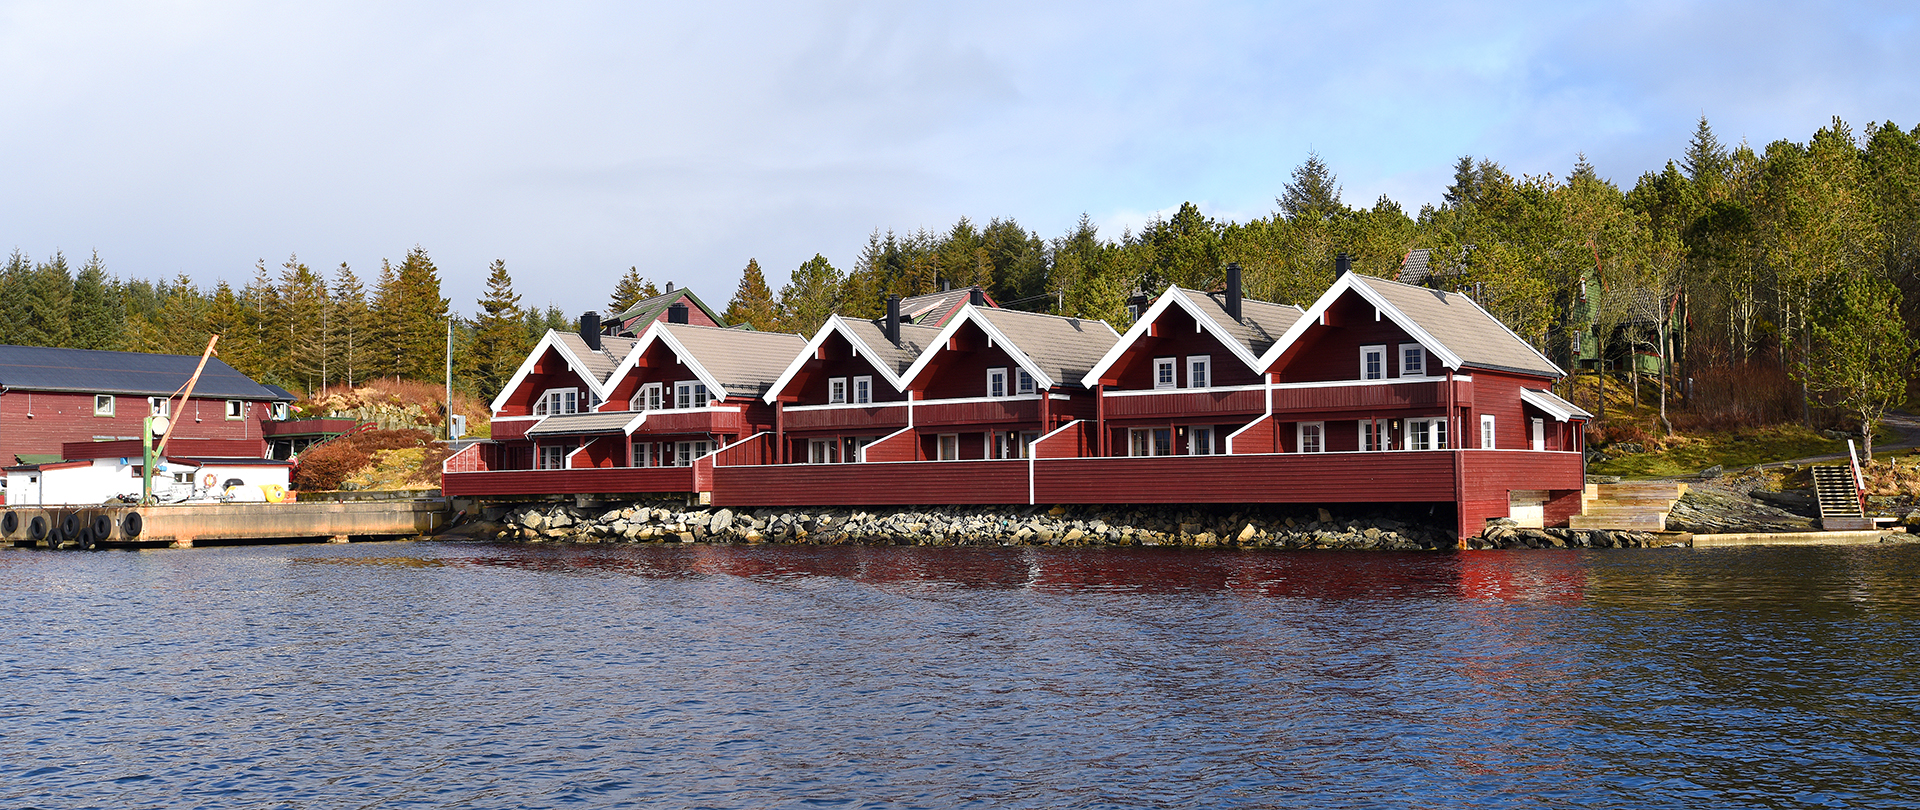 Norwegenurlaub in Kvalheim Fritid - jetzt Meeresangeln bei Bergen buchen!